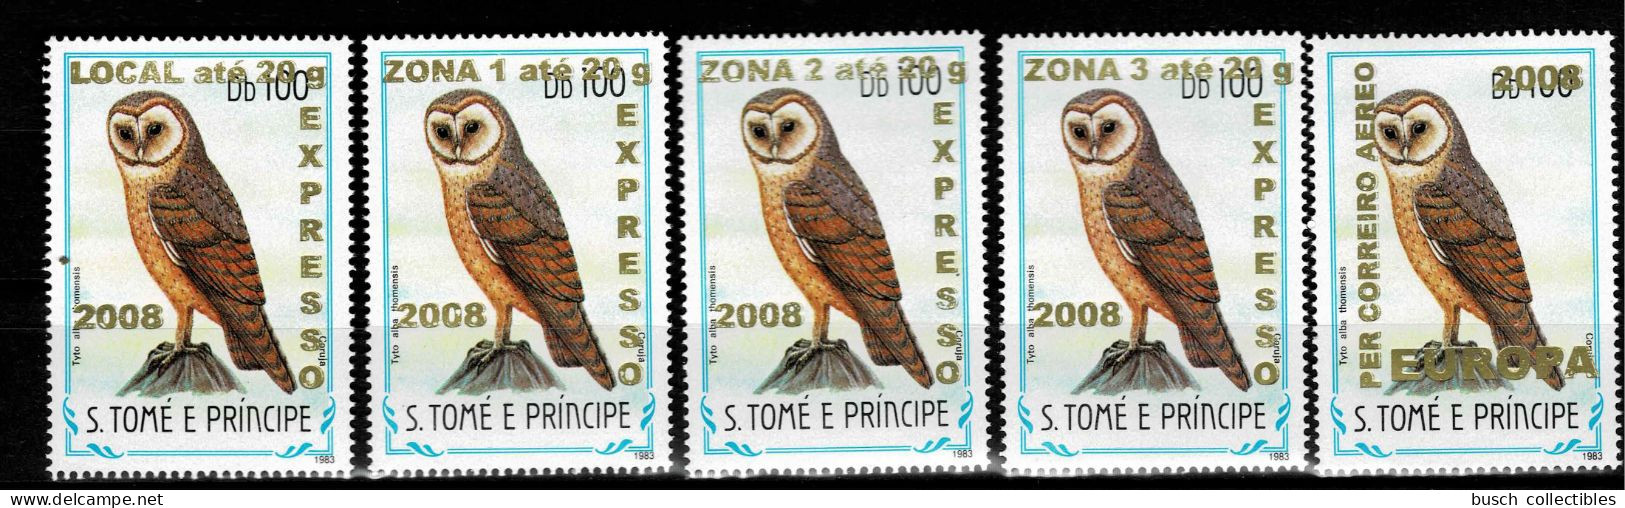 S. Tomé & Principe 2009 Mi. 3963 - 3966 + 3968 Oiseaux Birds Vögel Chouette Eule Owl Faune Fauna Overprint Surcharge 5v. - Eulenvögel